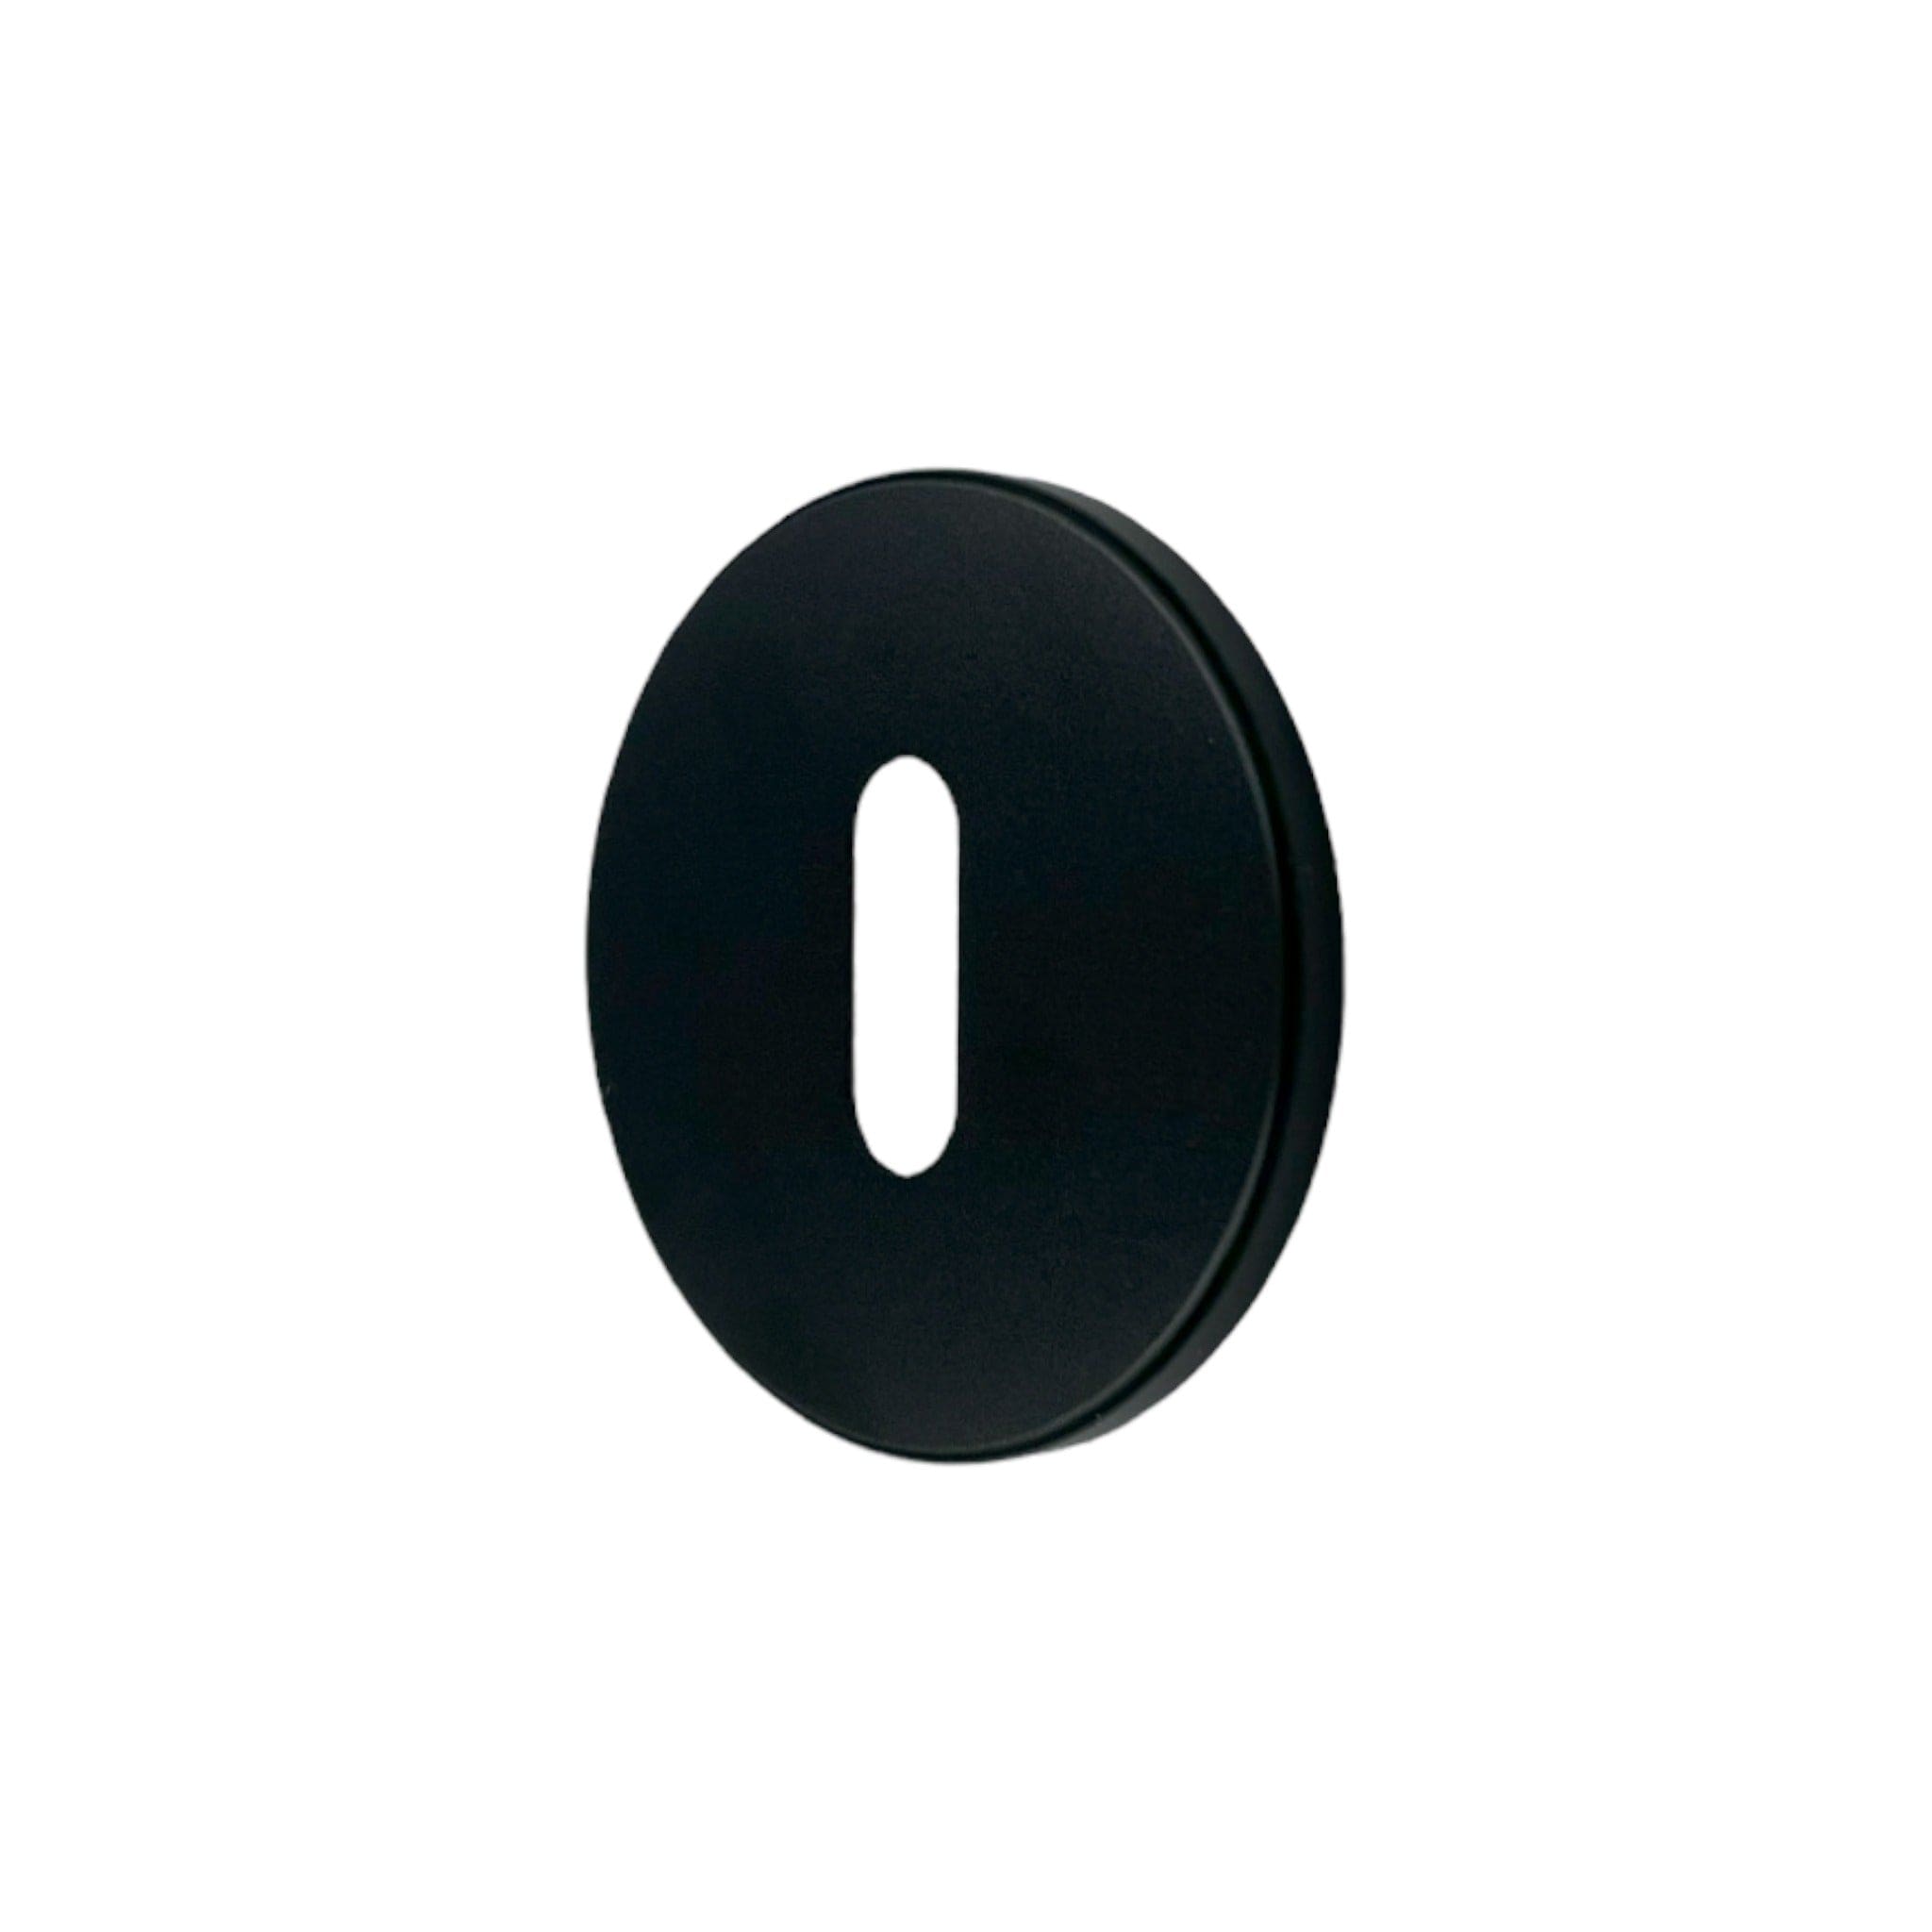 Linear Oval | Nøgleskilt i Sort (Welders Black) Ø 51 mm (C/C: 27 mm) Buster + Punch FINICC